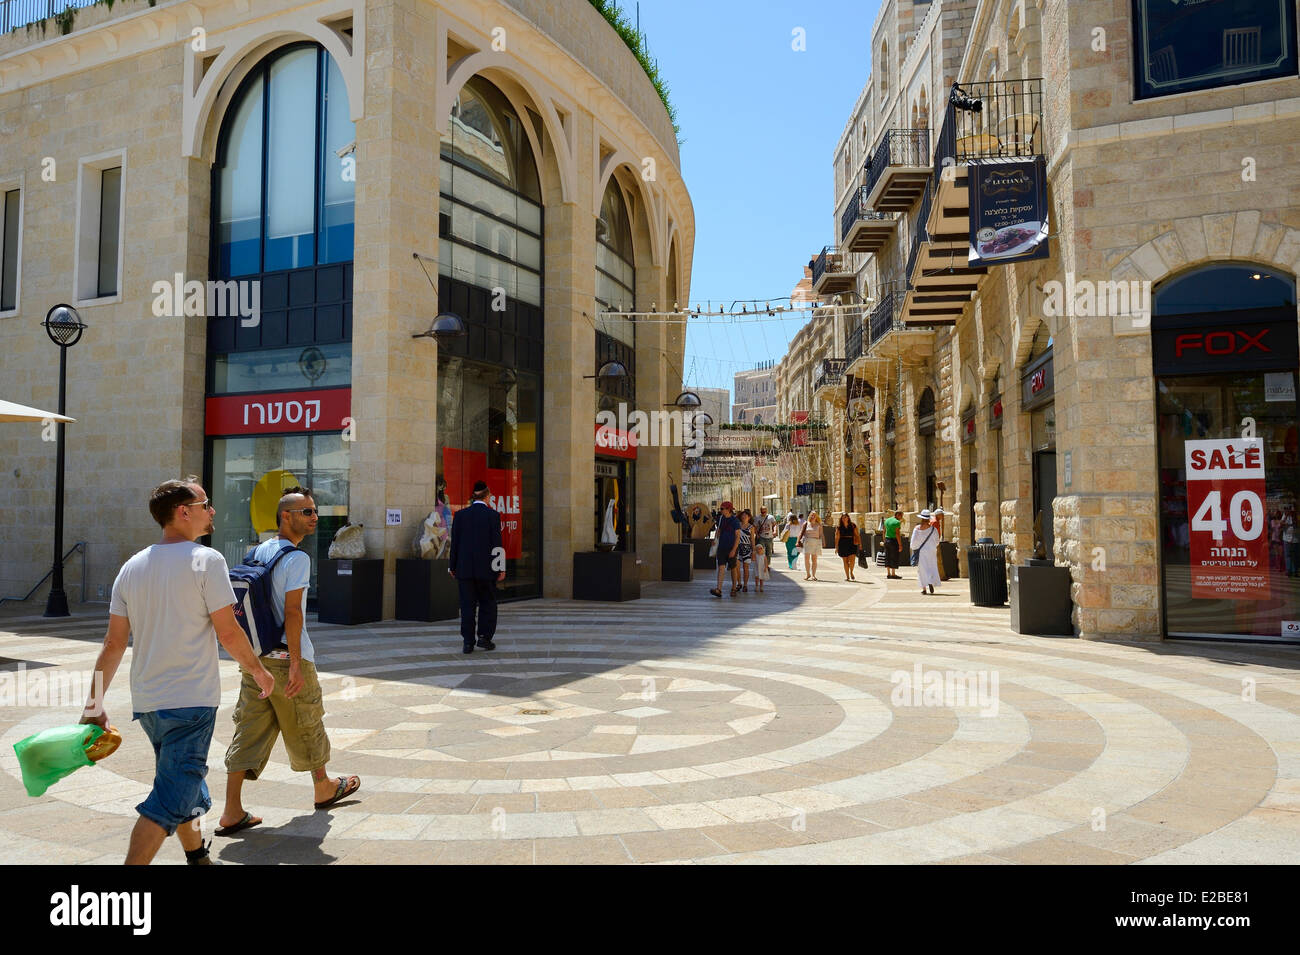 Israël, Jérusalem, centre commercial Mamilla et rue piétonne commerçante de luxe en ville moderne, conçu par l'architecte israélien Moshe Safdie Banque D'Images